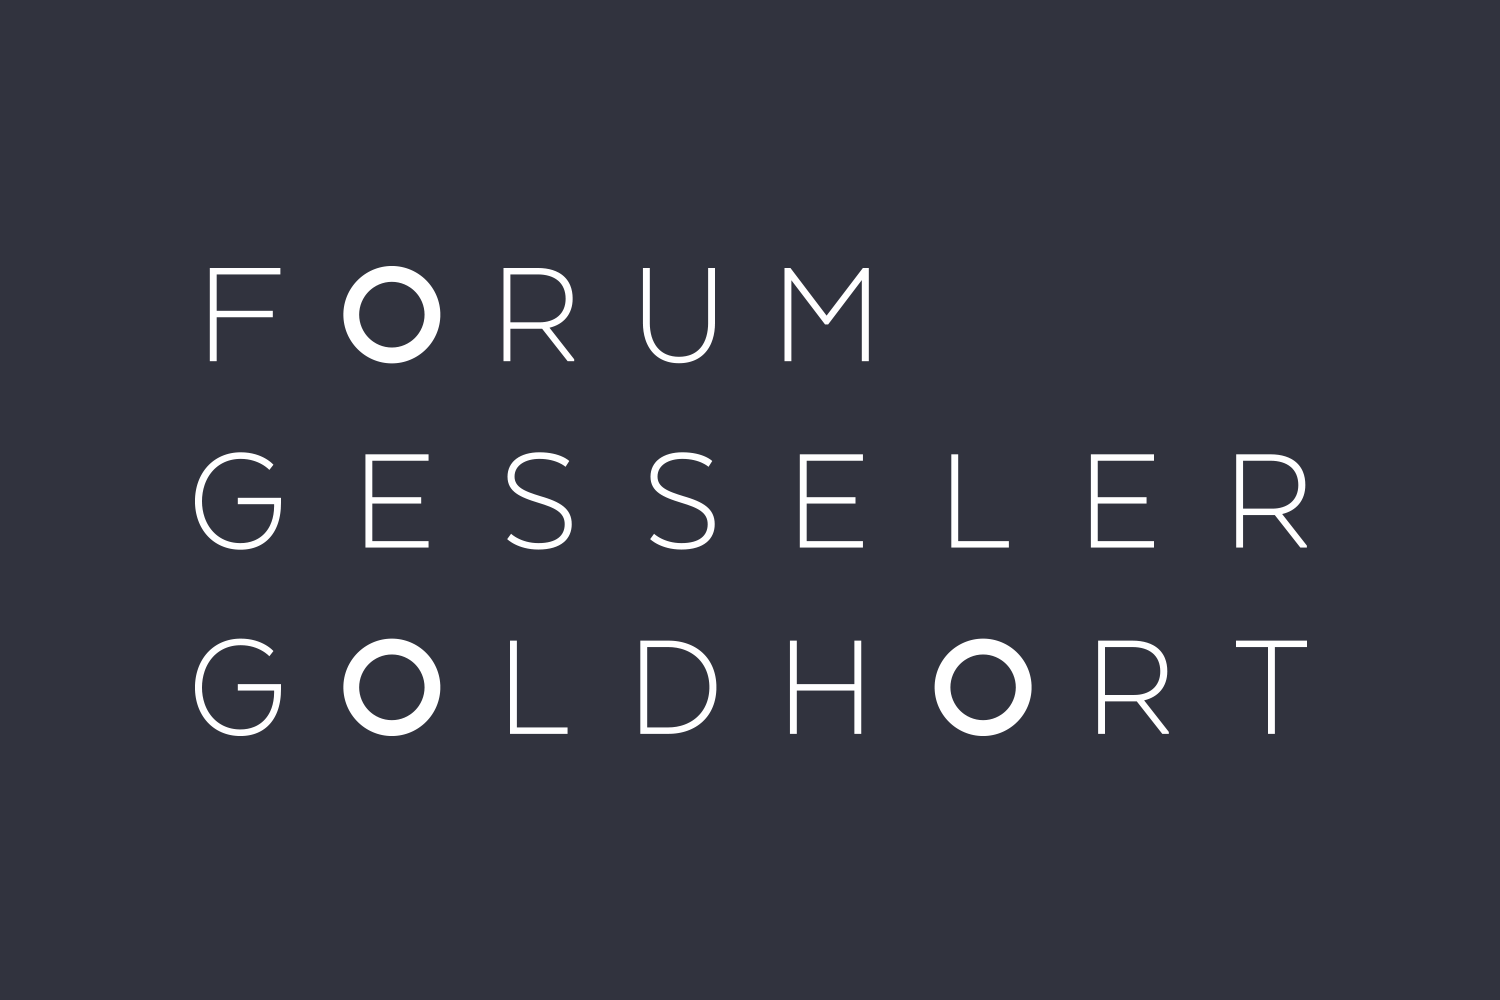 (c) Forum-gesseler-goldhort.de